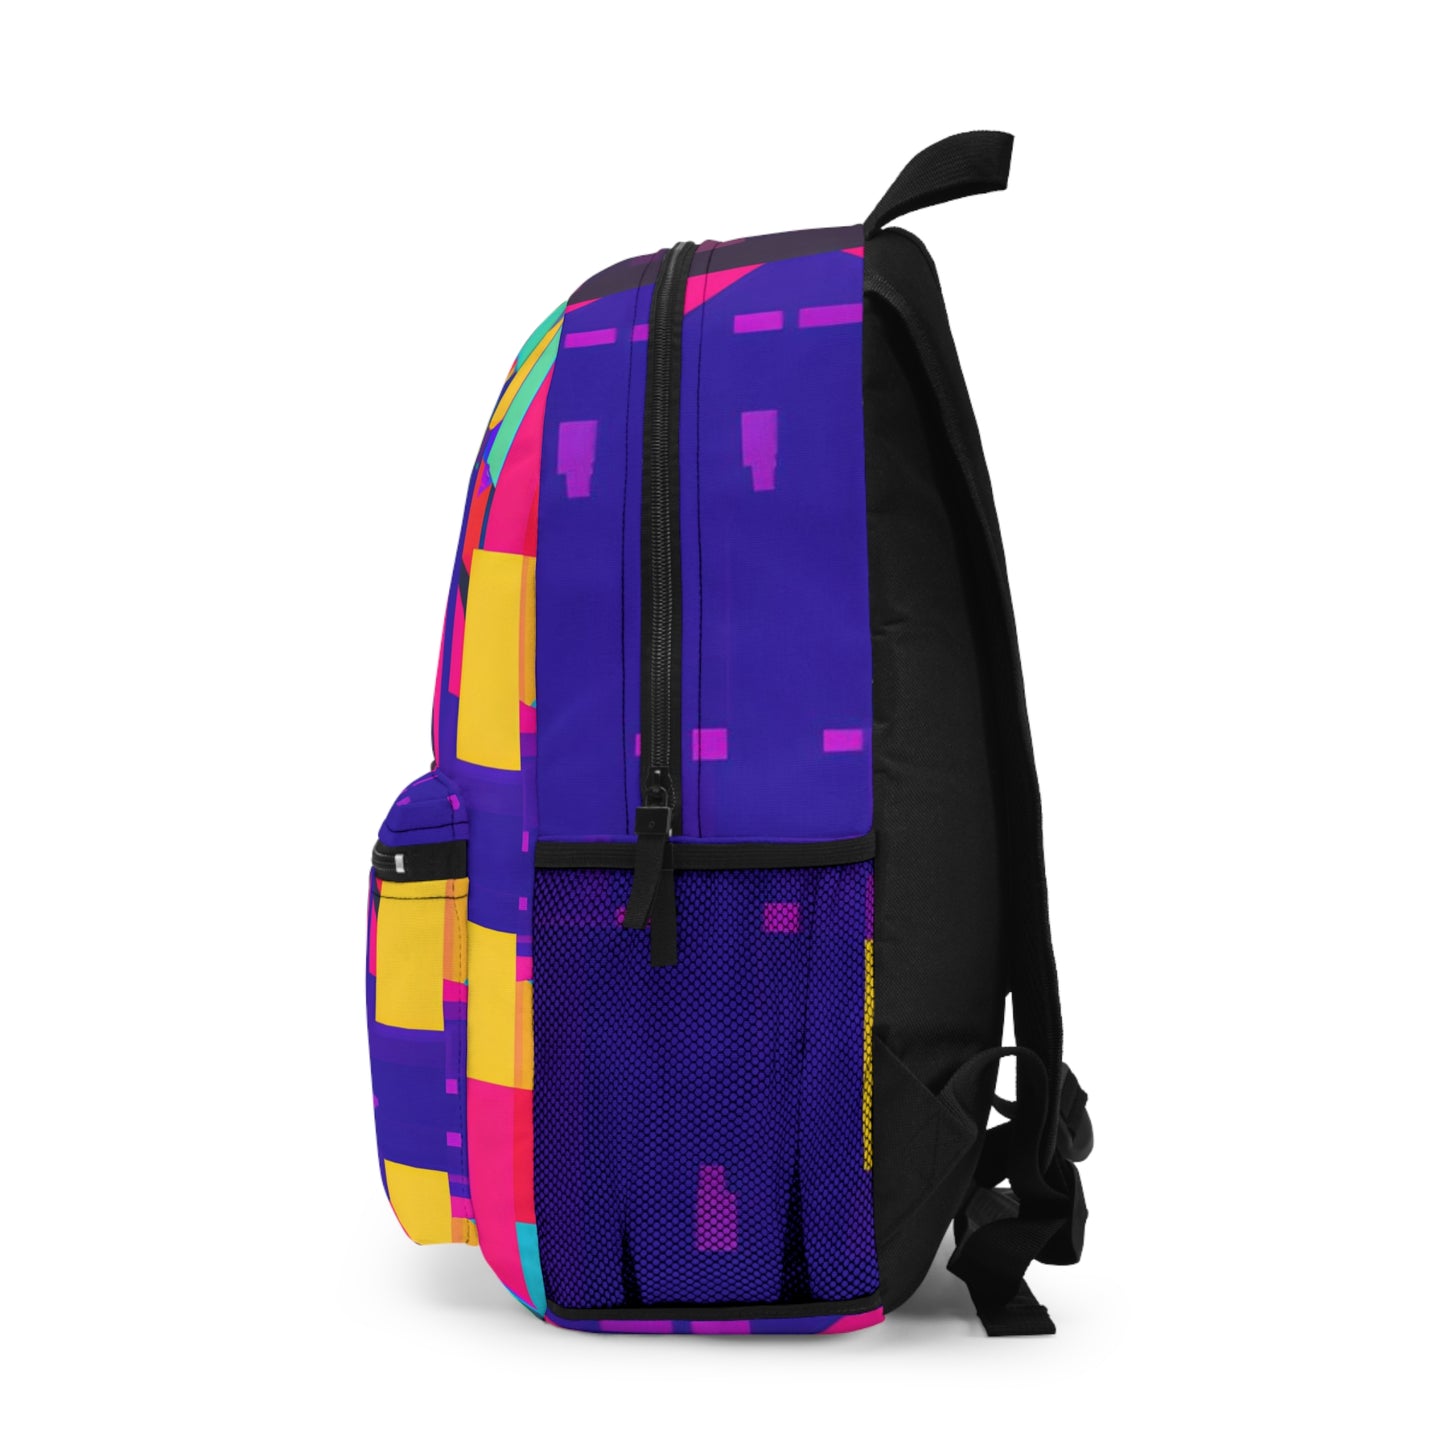 NovaSparkle - Hustler Backpack